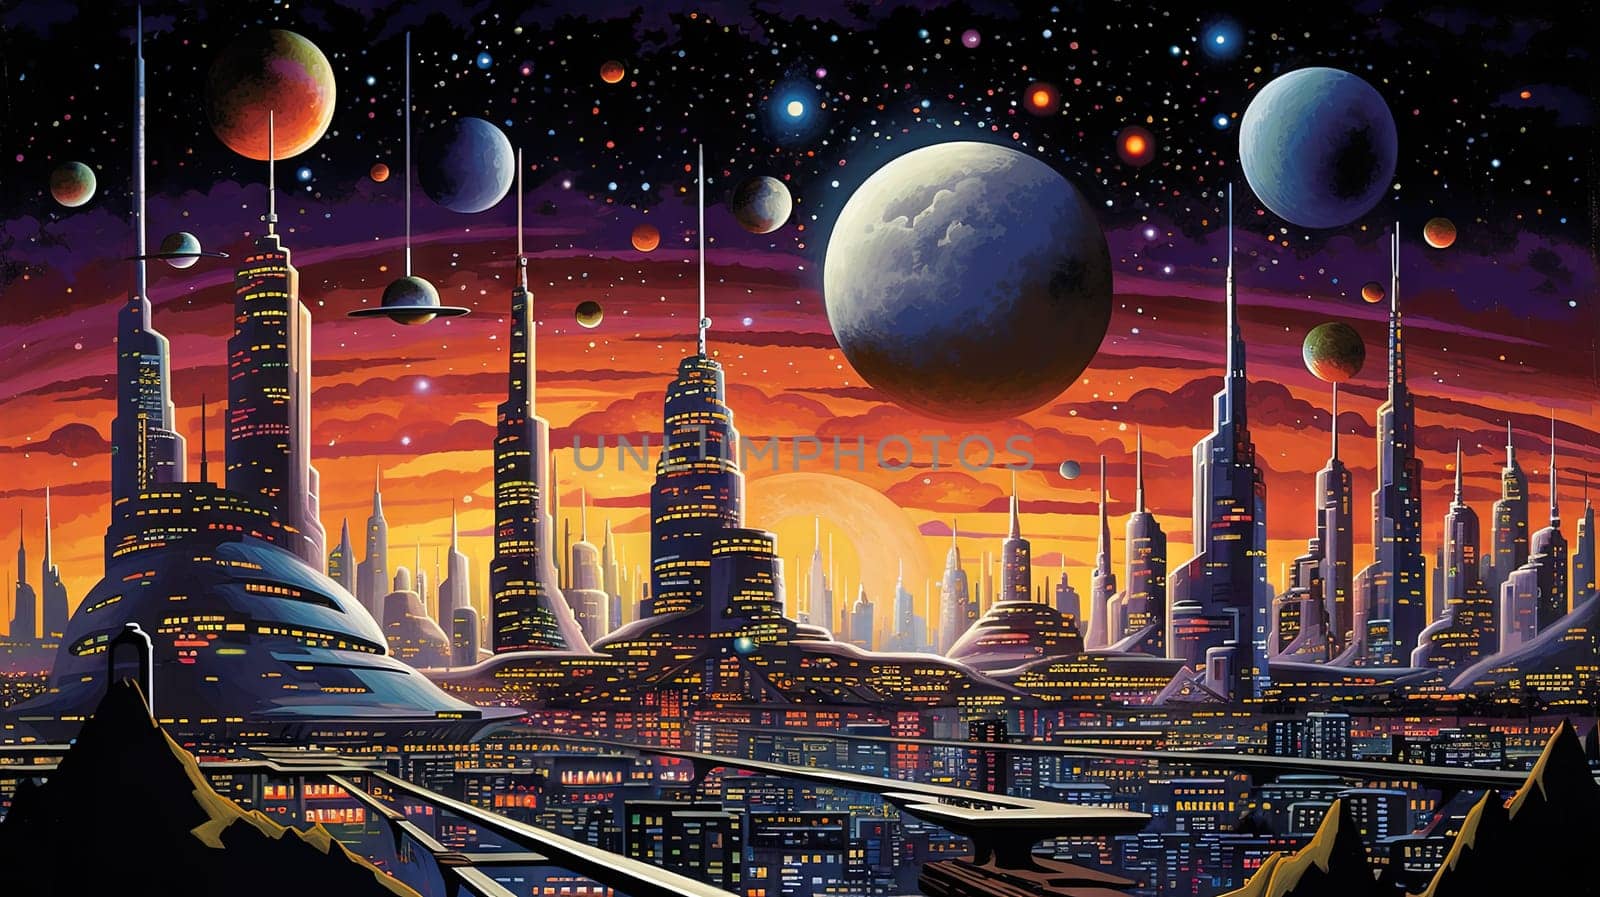 Retro futuristic city in the old school sci-fi art scene. Retro space landscape with city. Generated AI. by SwillKch